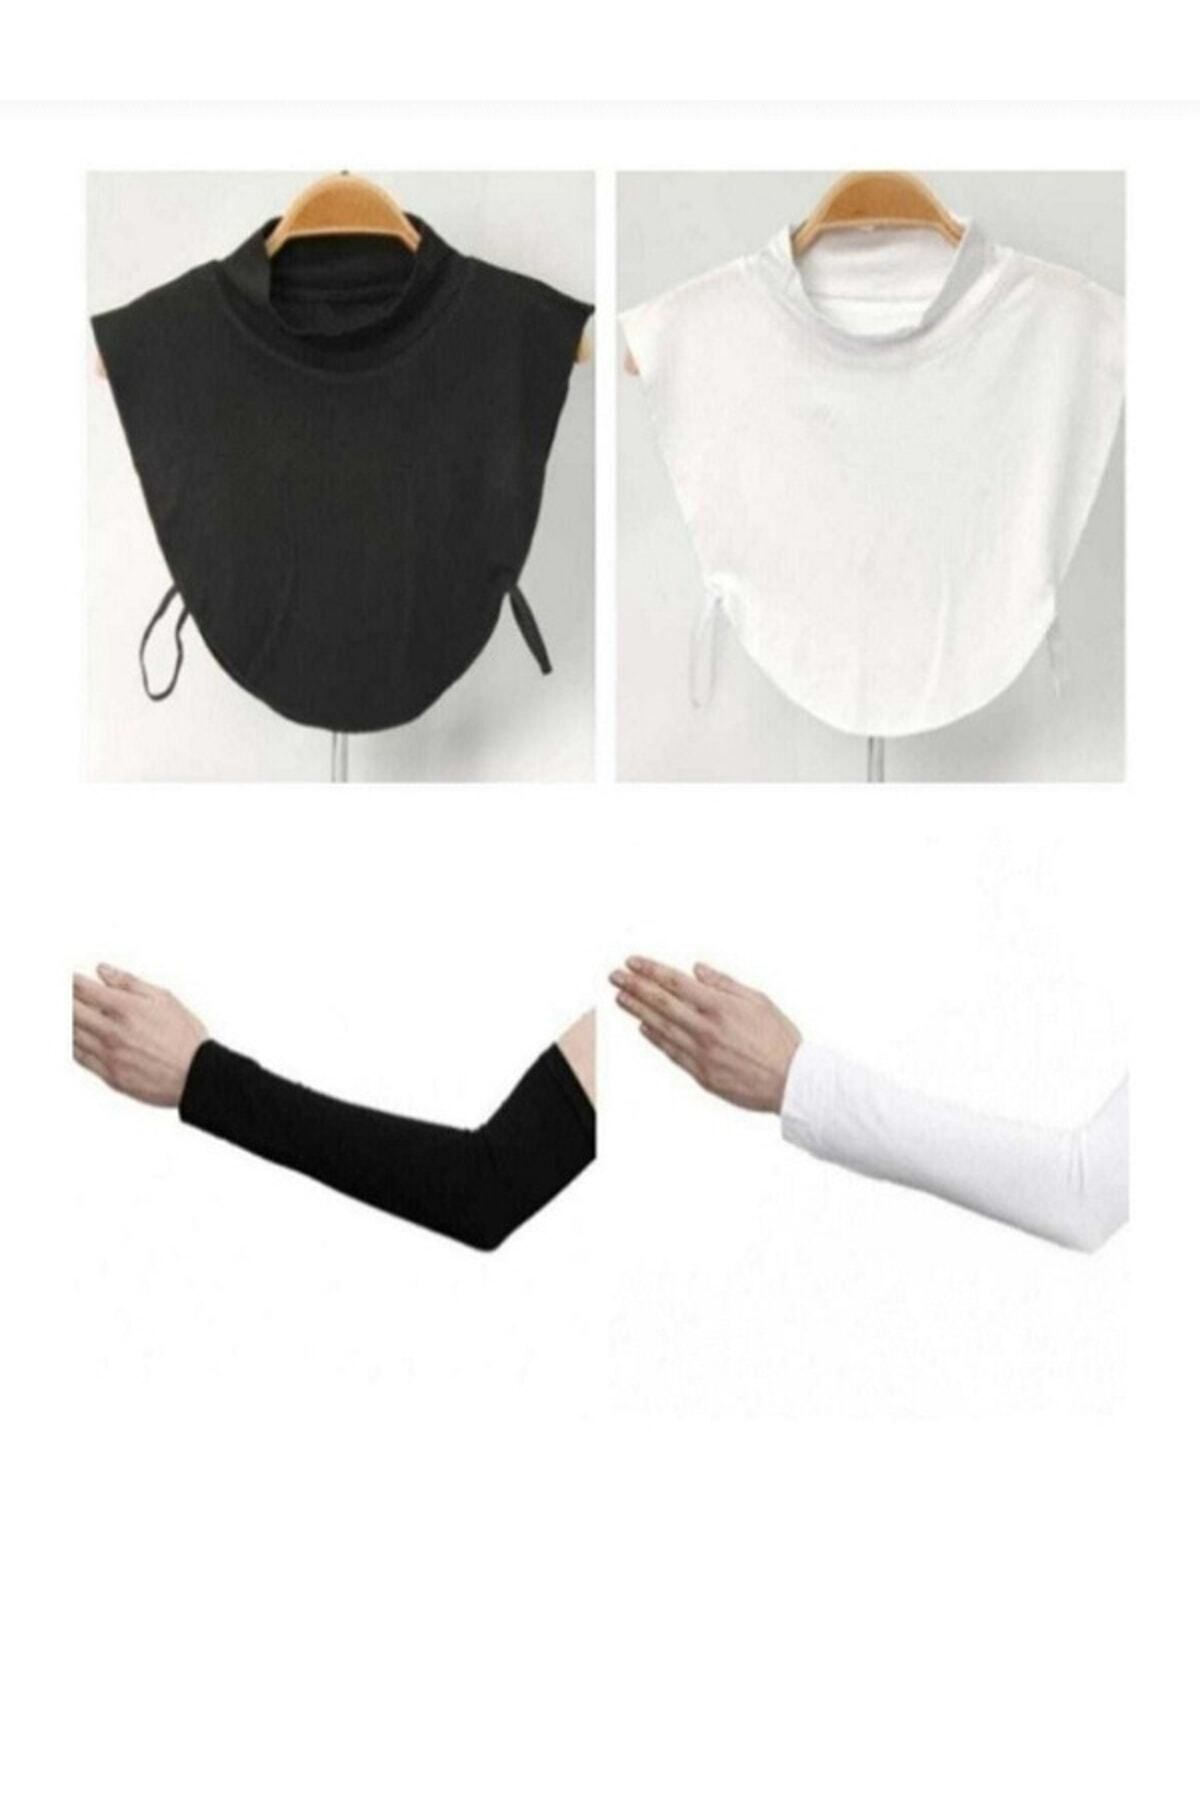 BEYAZ DÜŞ Boyunluk Kolluk Set 2 Şer Adet Siyah Beyaz Renk Tesettür Giyim SET BONE BOYUNLUK KOLLUK SB